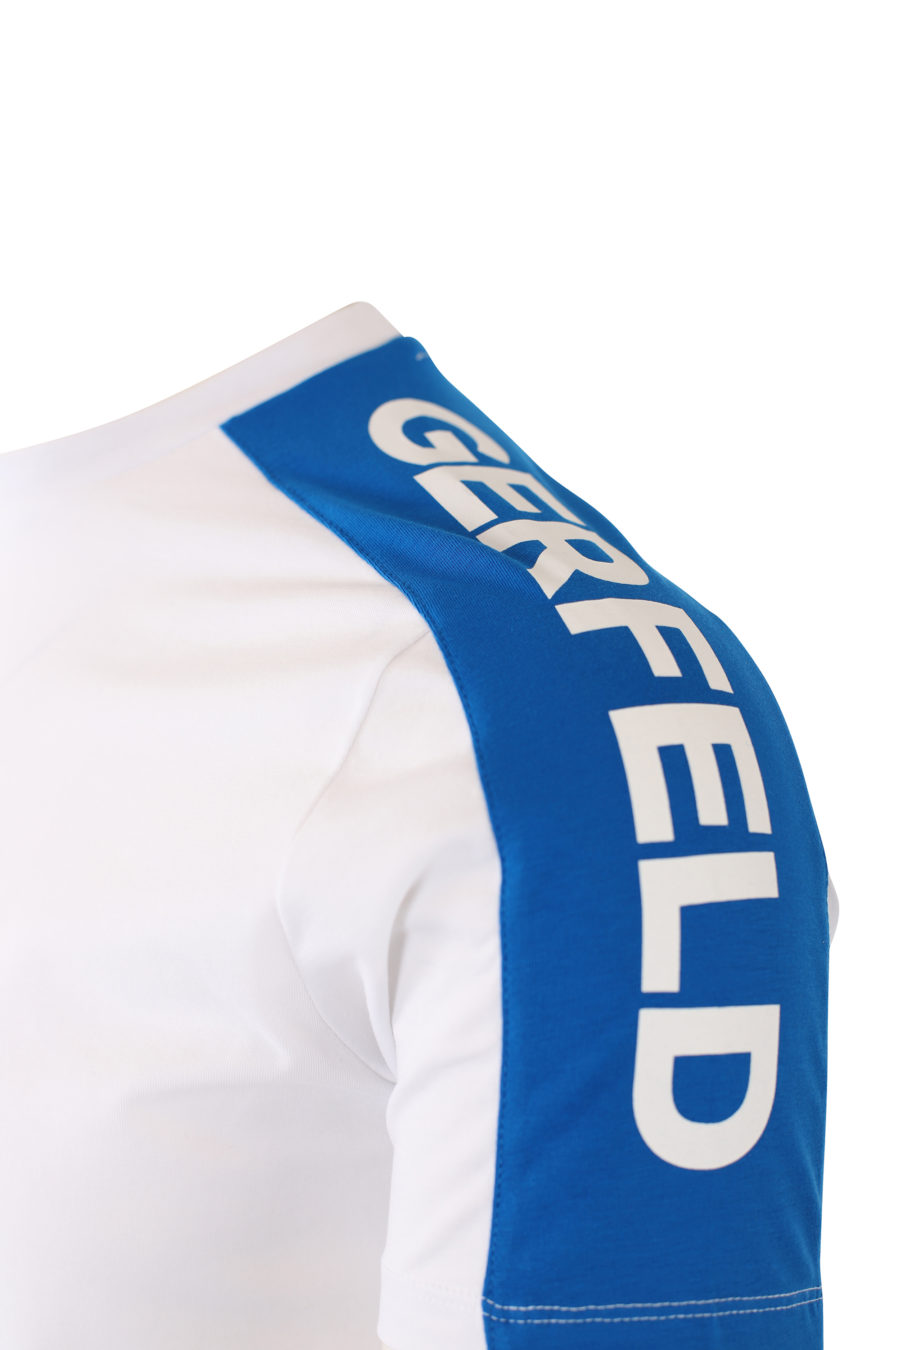 Camiseta blanca con logo en cinta azul en hombros - IMG 2111